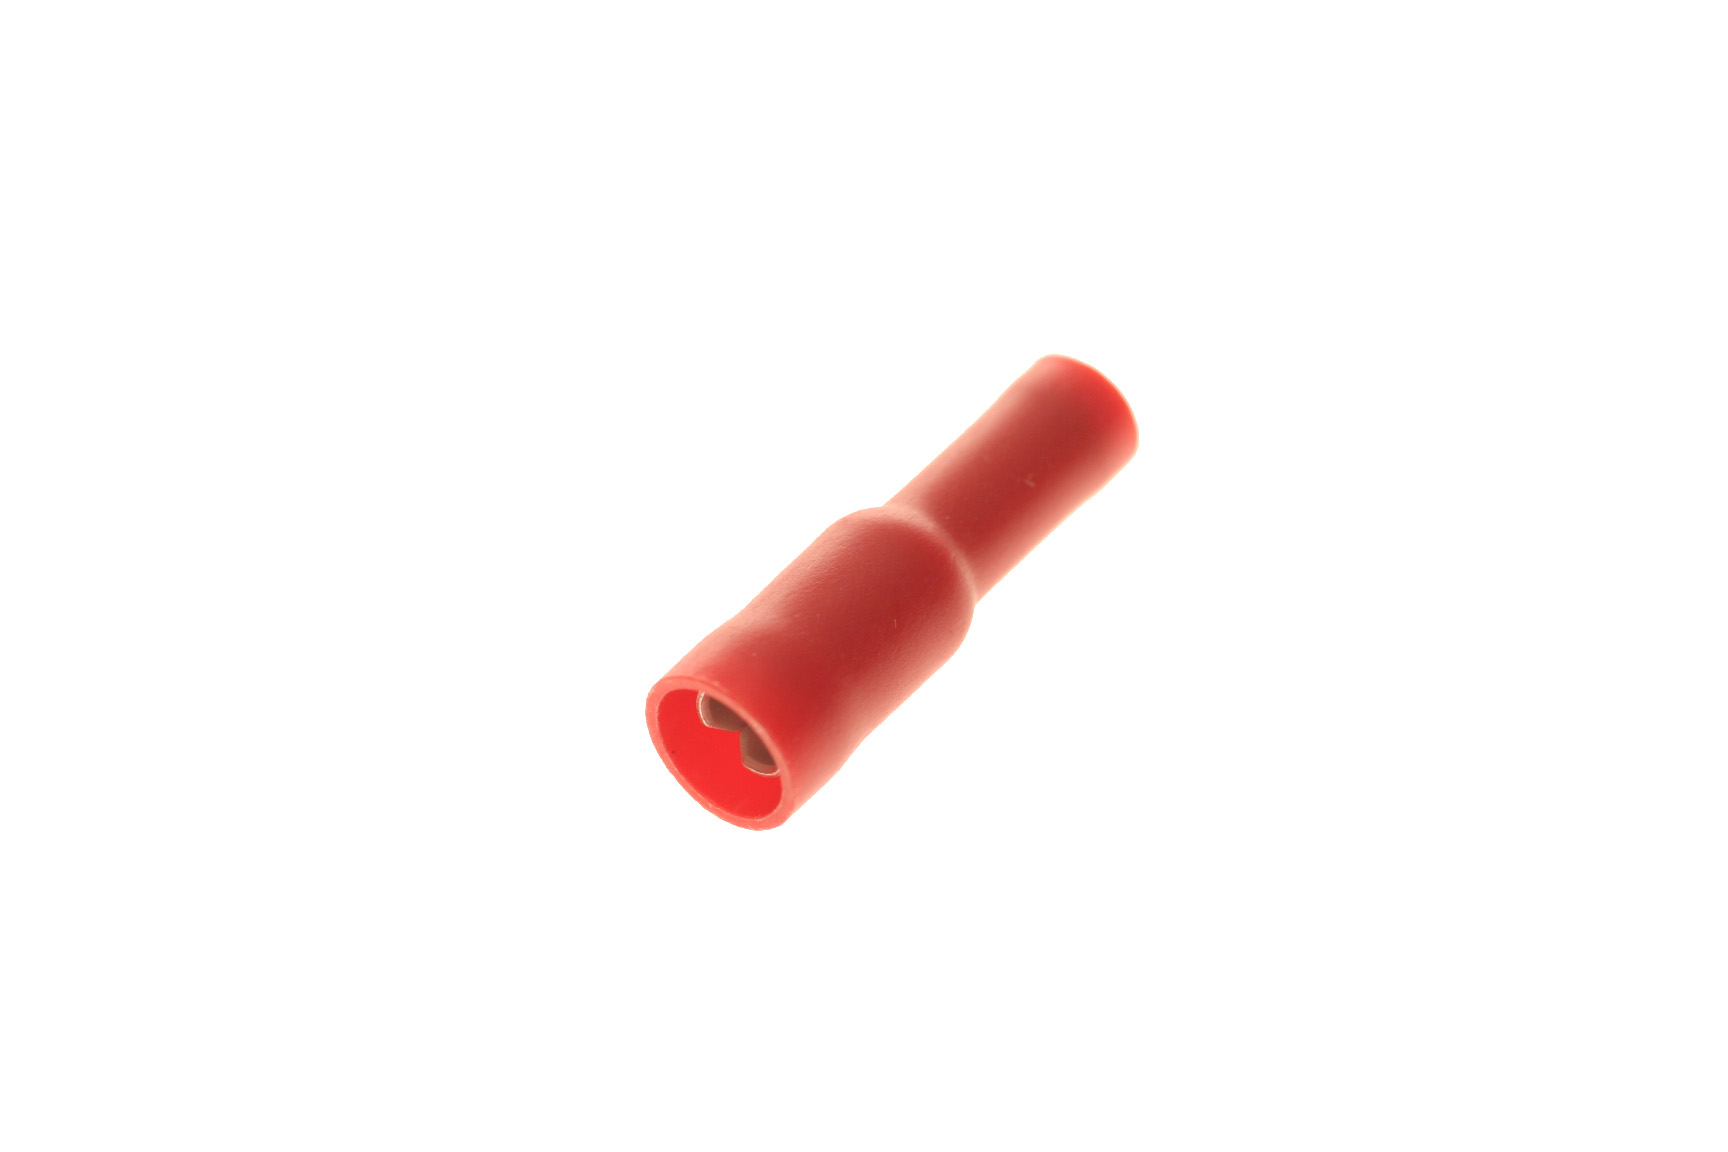 Rundsteckerhülse, 4mm, rot, Gegenstück zu .034